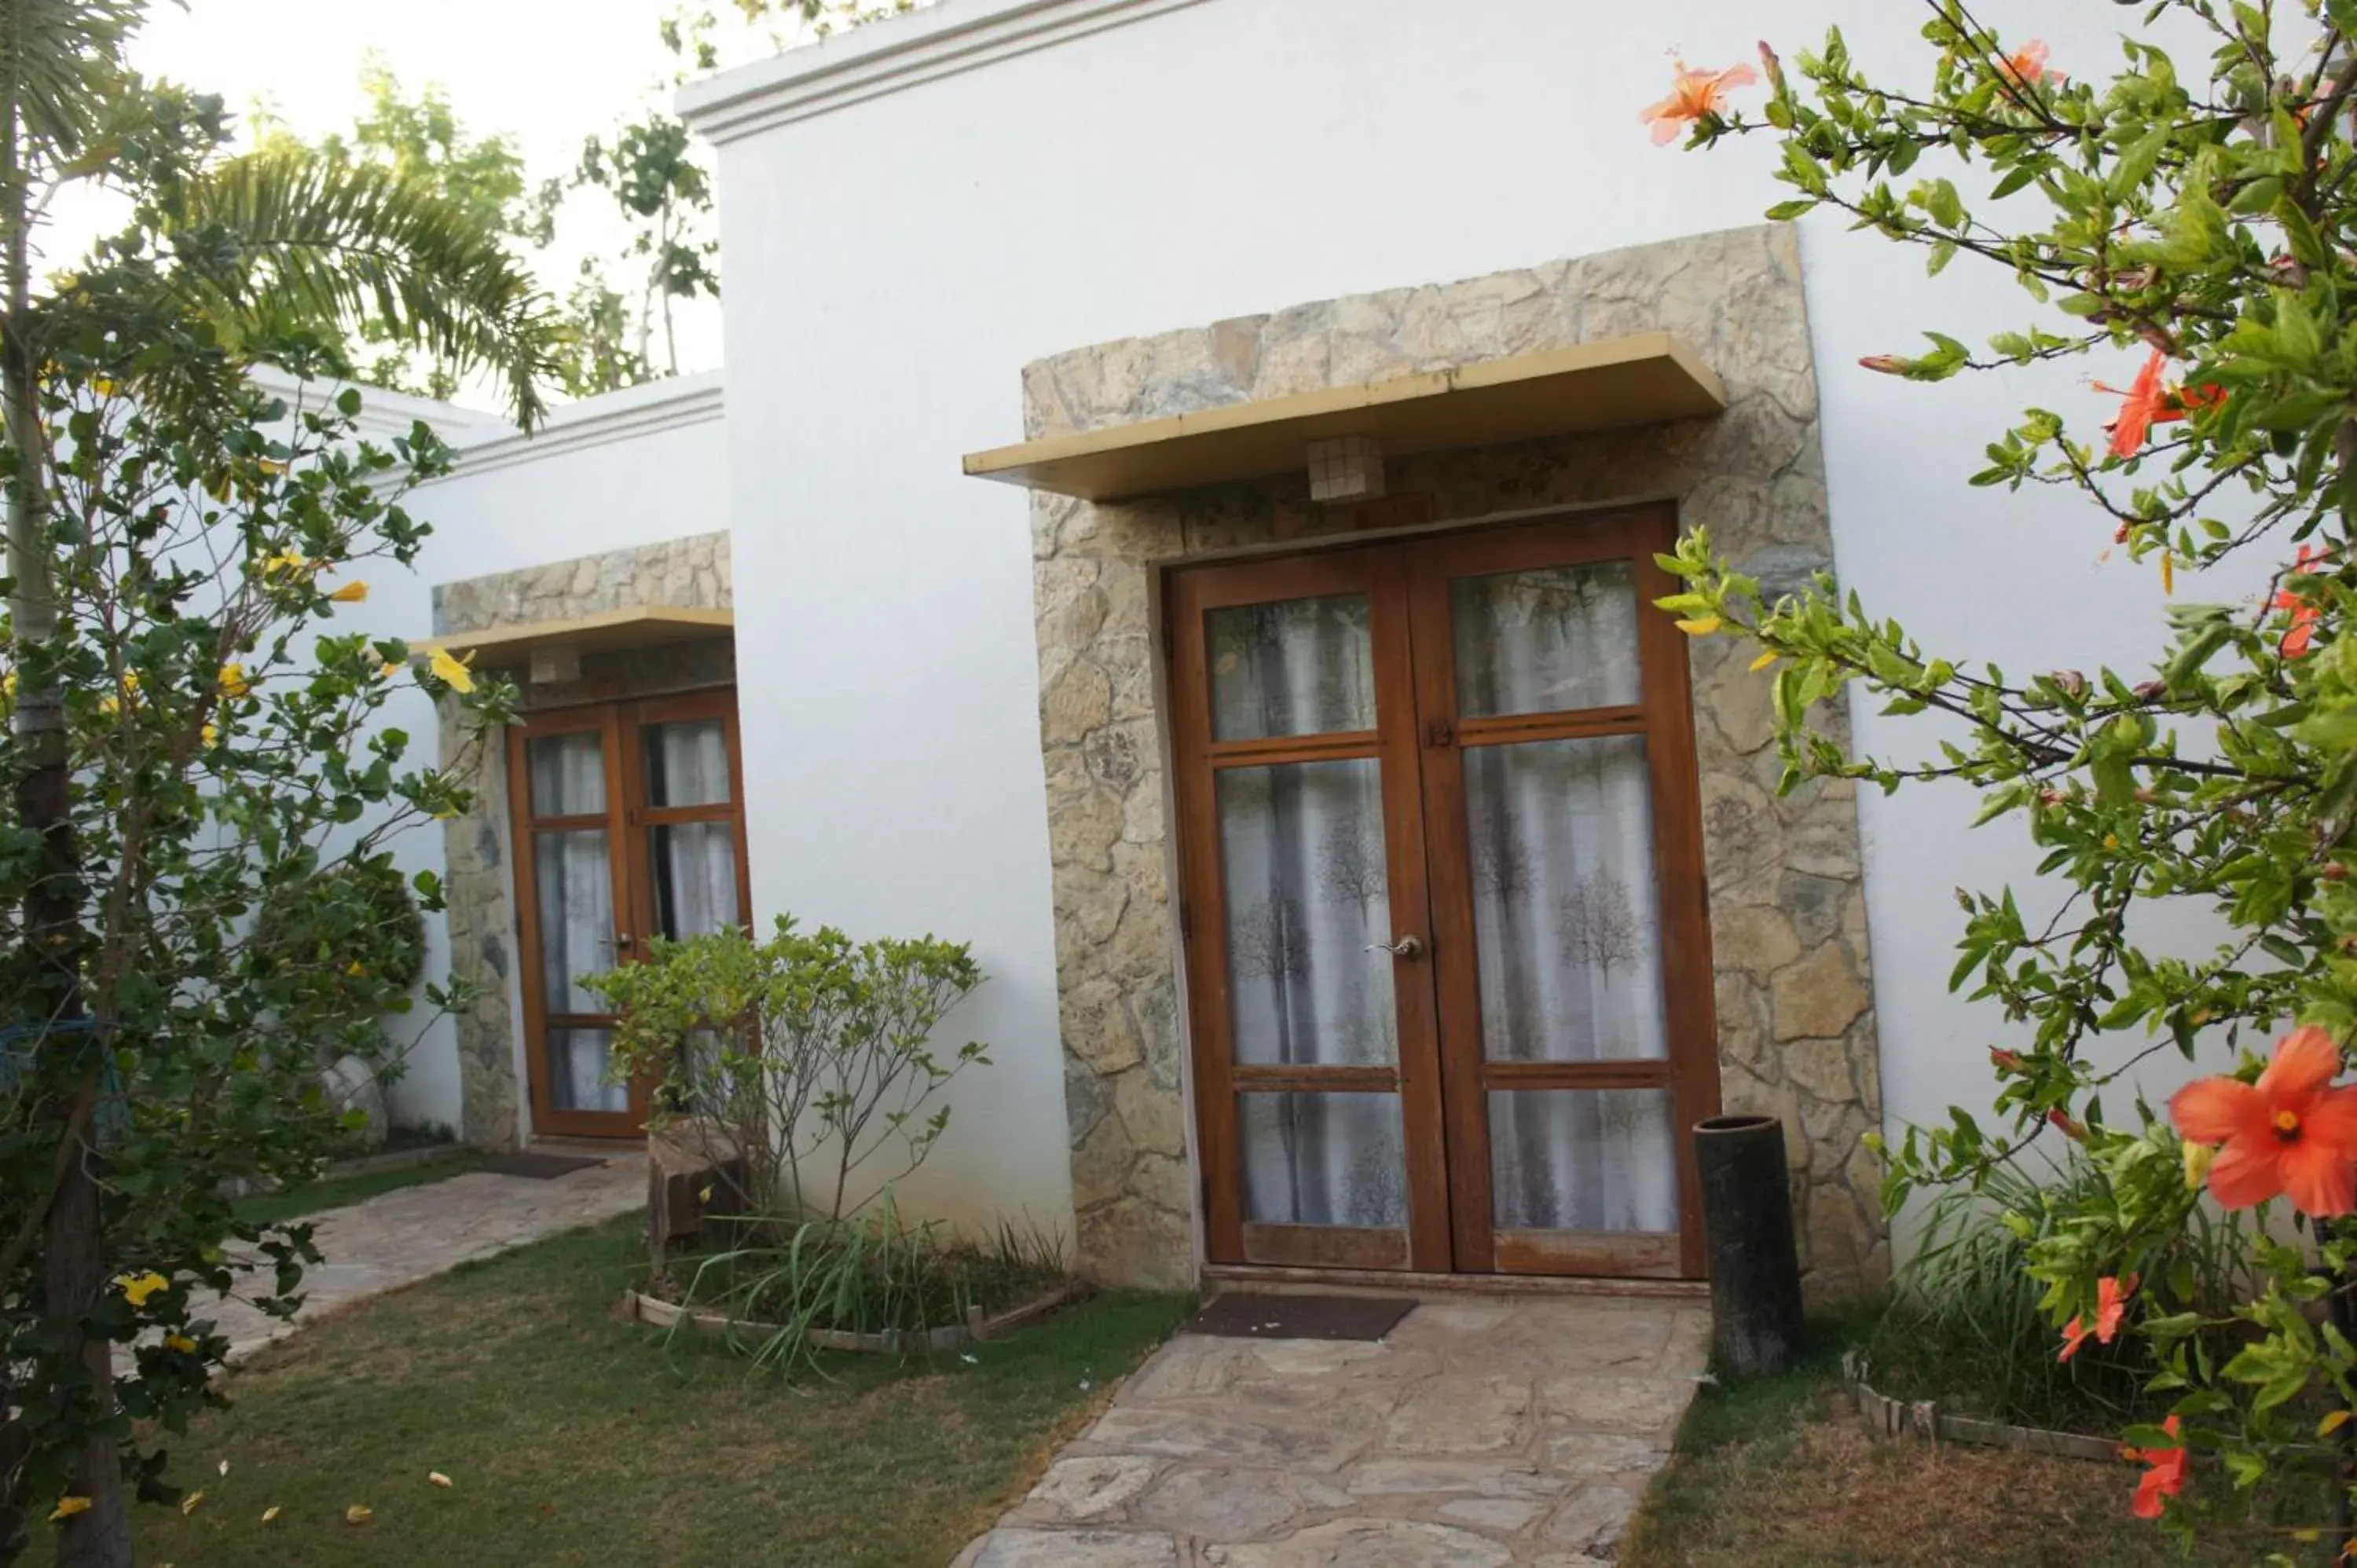 Facade/entrance, Property Building in Acacia Tree Garden Hotel